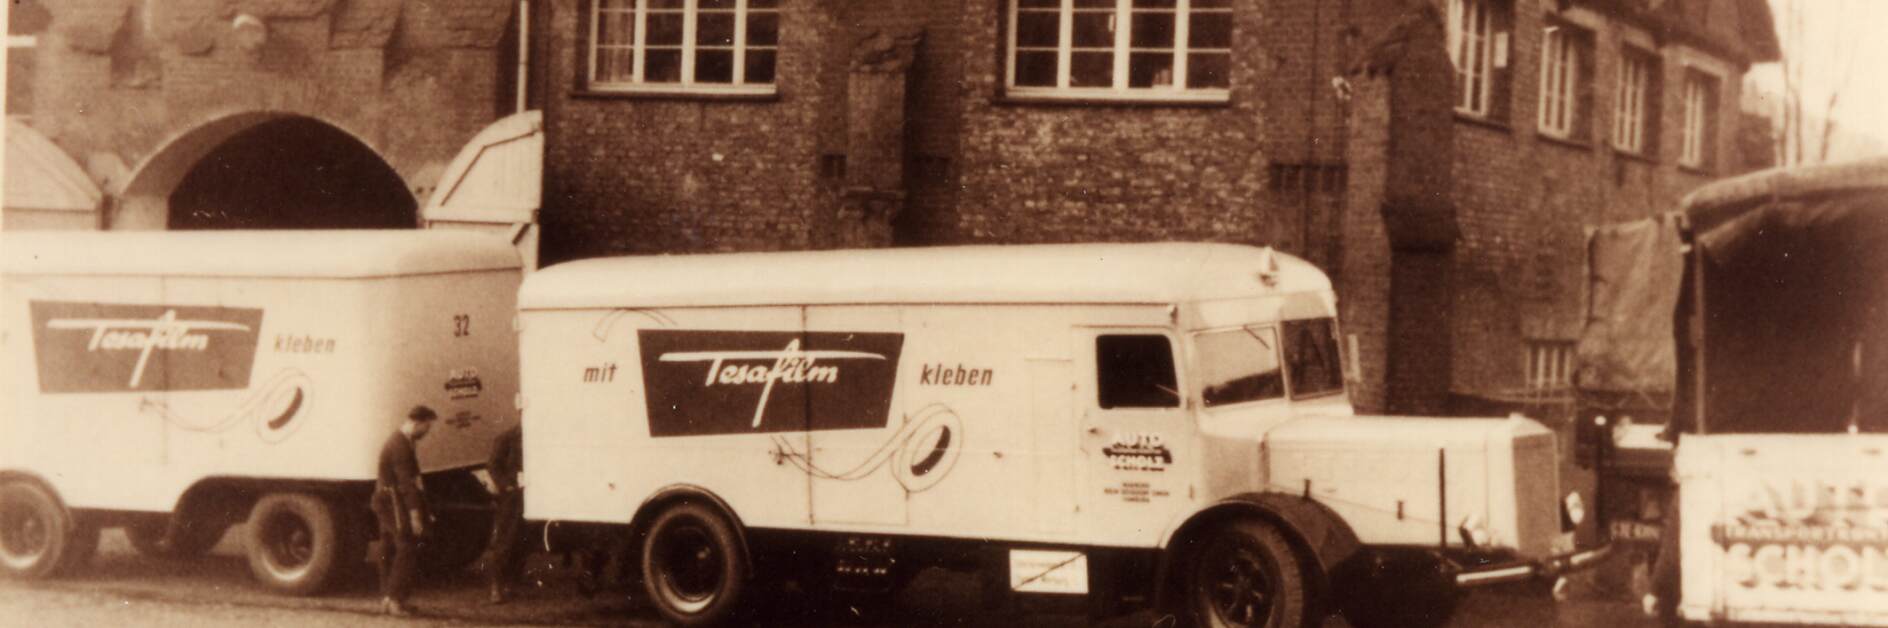 Xe tải tesa trong quảng cáo tesafilm từ năm 1952